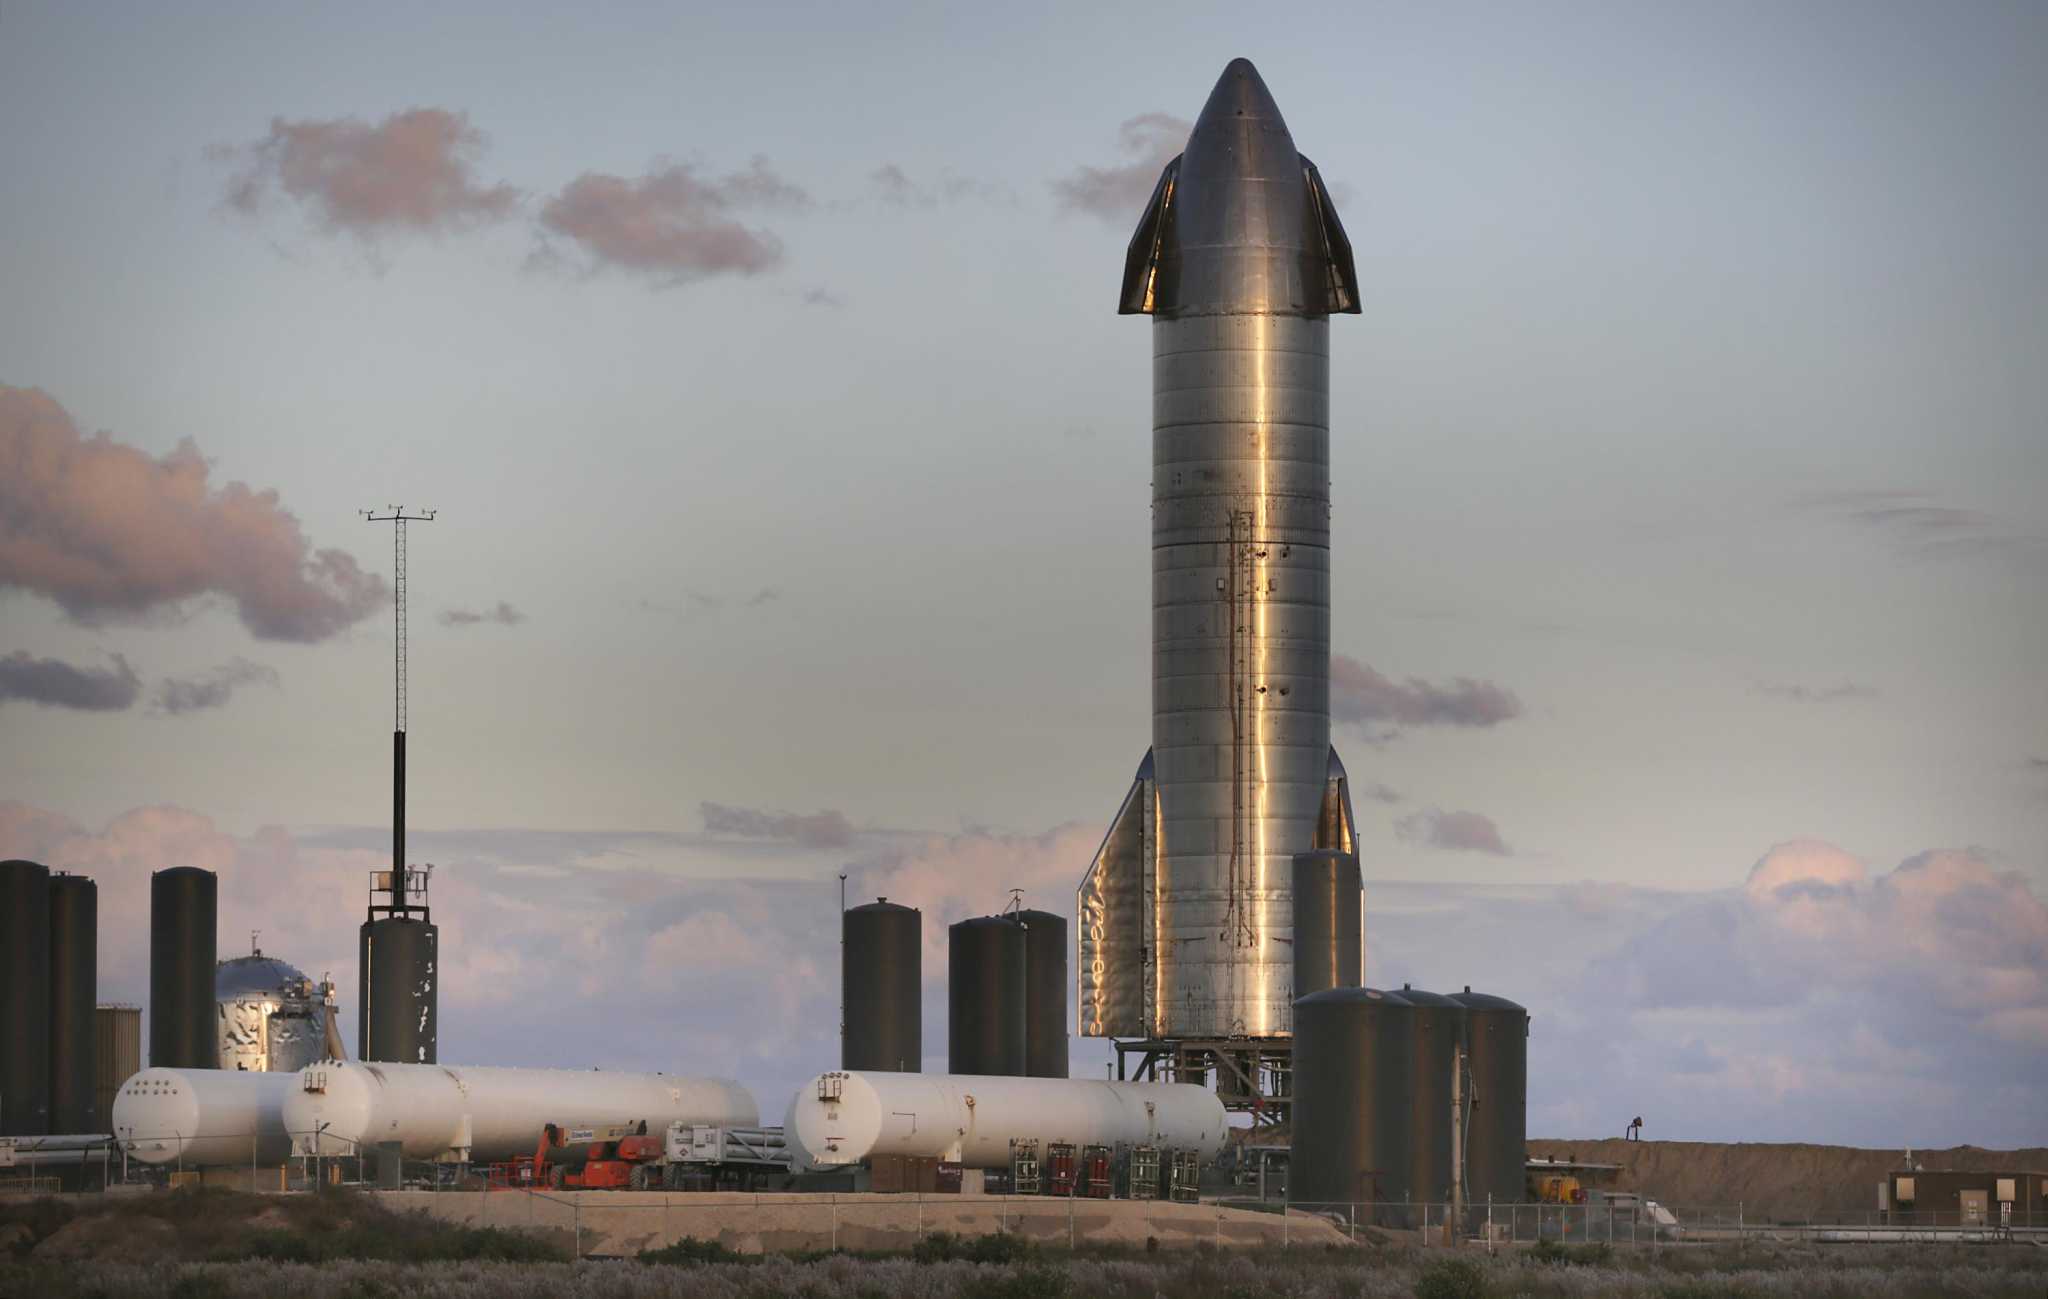 星舰准备发射！马斯克发推表示SpaceX即将进行星舰首次入轨测试 - 哔哩哔哩